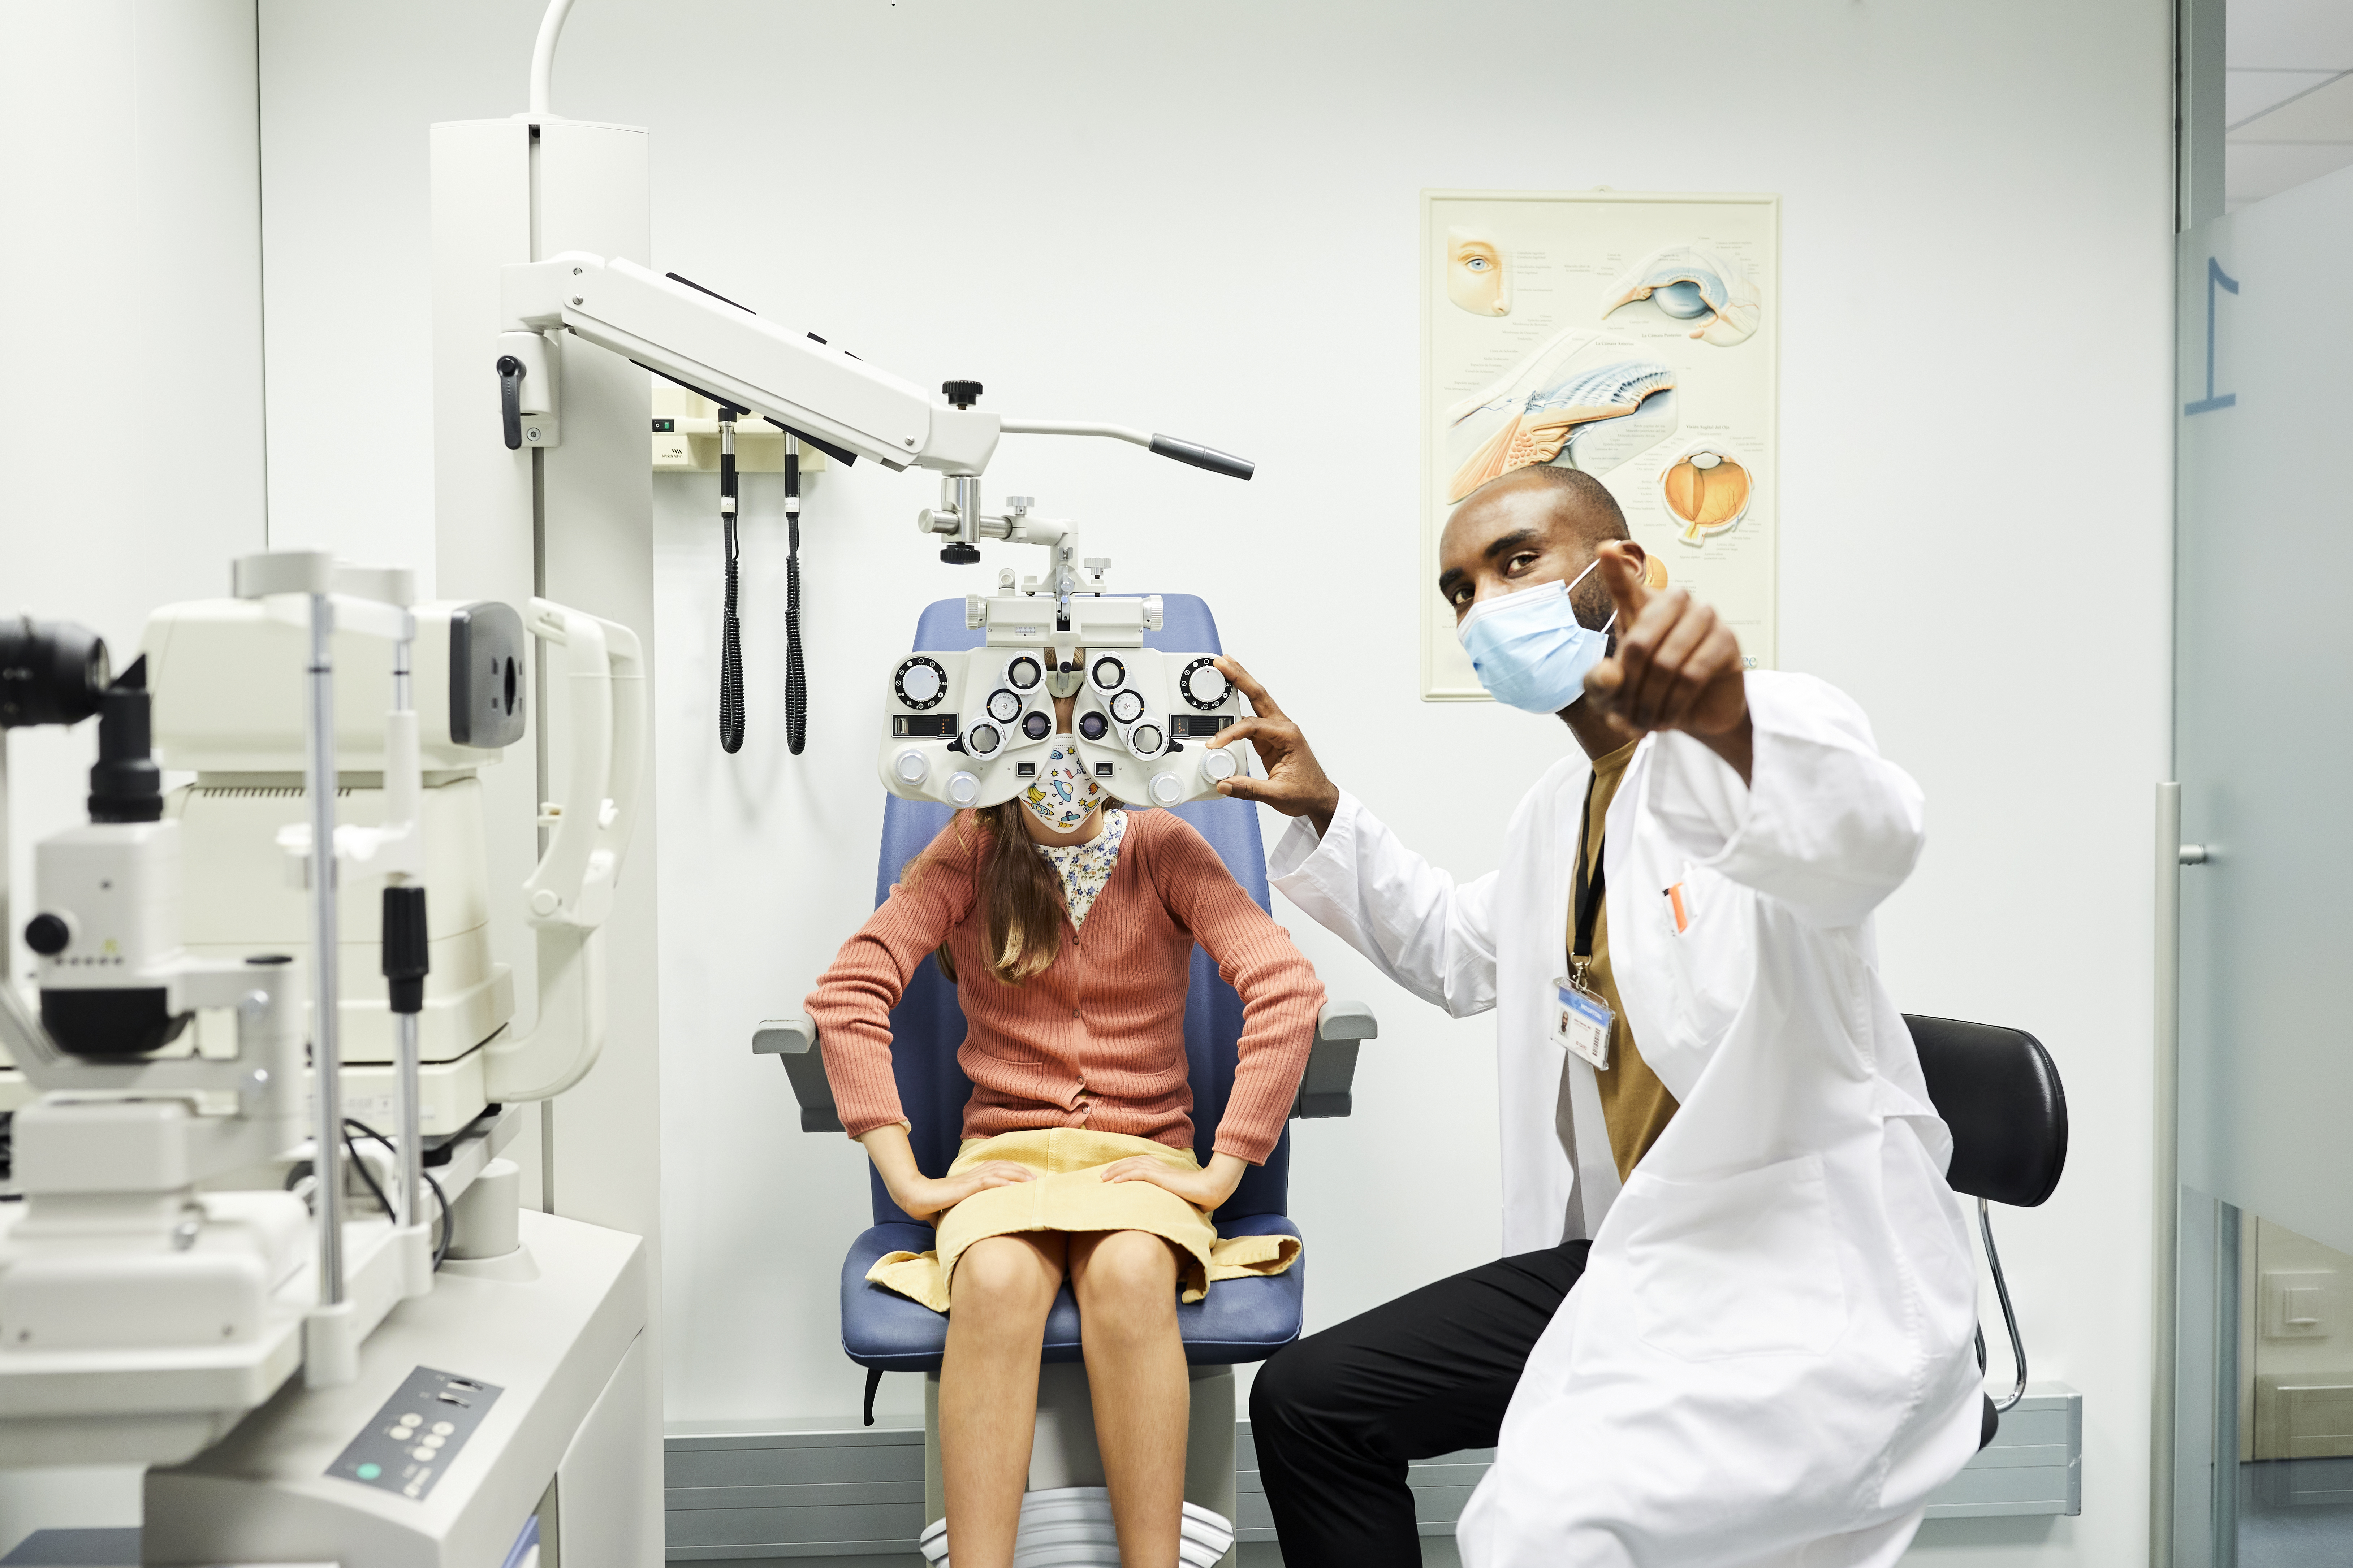 Oftalmólogo señalando a una niña mientras usa una mascarilla protectora. La niña está sentada detrás de la optometría en el consultorio del médico. Están en el hospital para un examen de la vista durante la crisis del COVID-19.